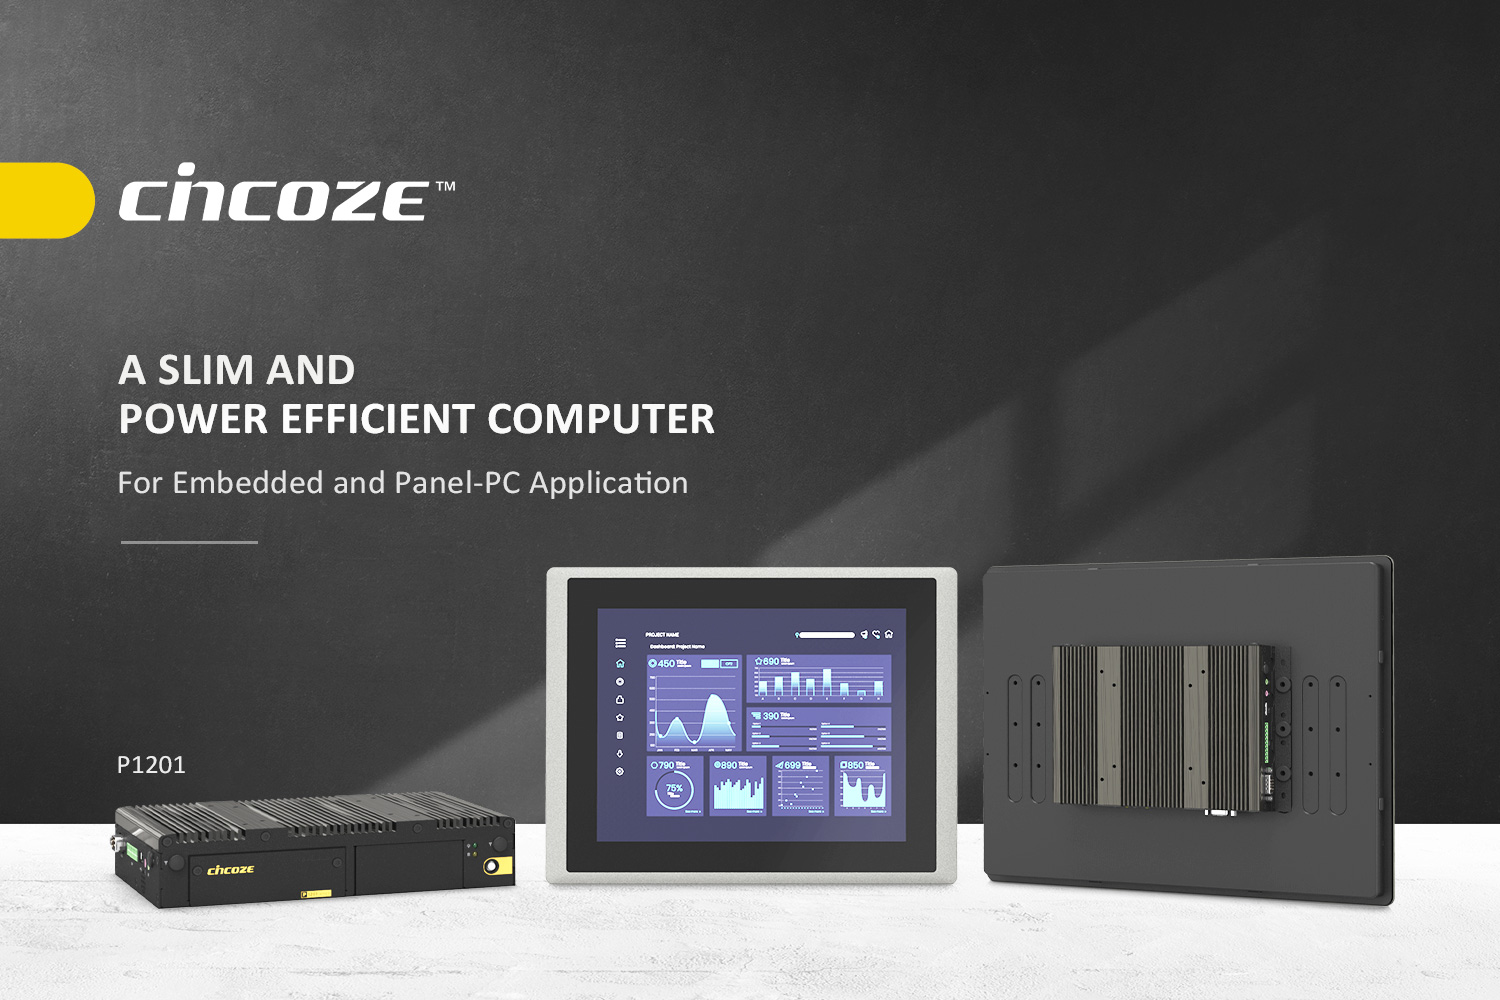 德承发表新款超薄型嵌入式两用电脑P1201系列，兼具效能与弹性